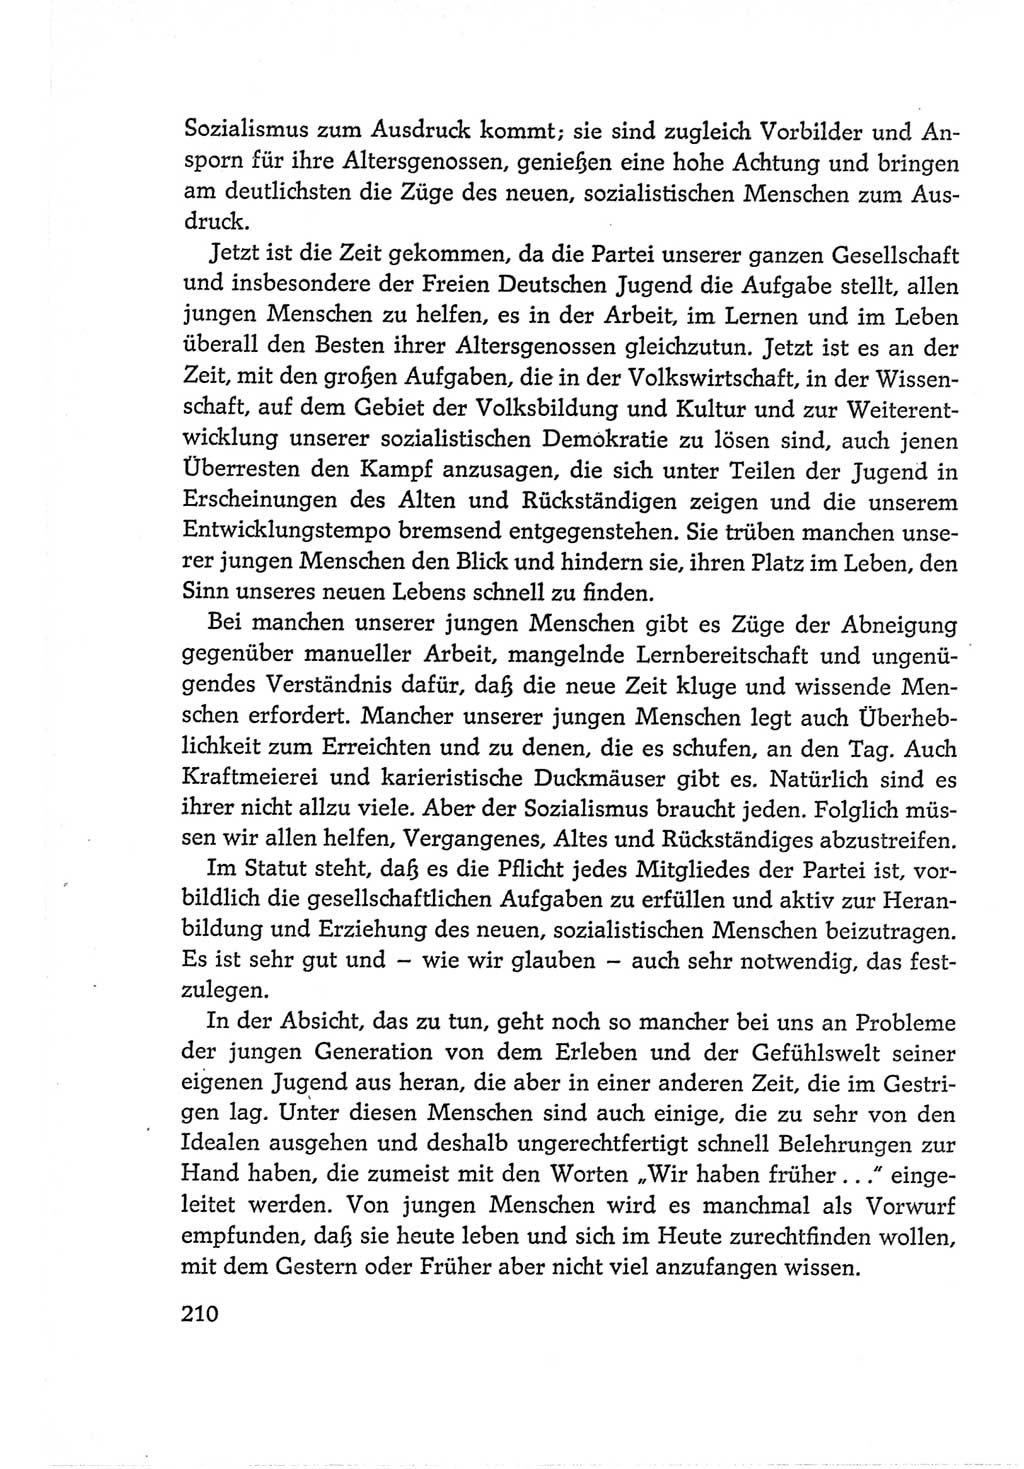 Protokoll der Verhandlungen des Ⅵ. Parteitages der Sozialistischen Einheitspartei Deutschlands (SED) [Deutsche Demokratische Republik (DDR)] 1963, Band Ⅱ, Seite 210 (Prot. Verh. Ⅵ. PT SED DDR 1963, Bd. Ⅱ, S. 210)